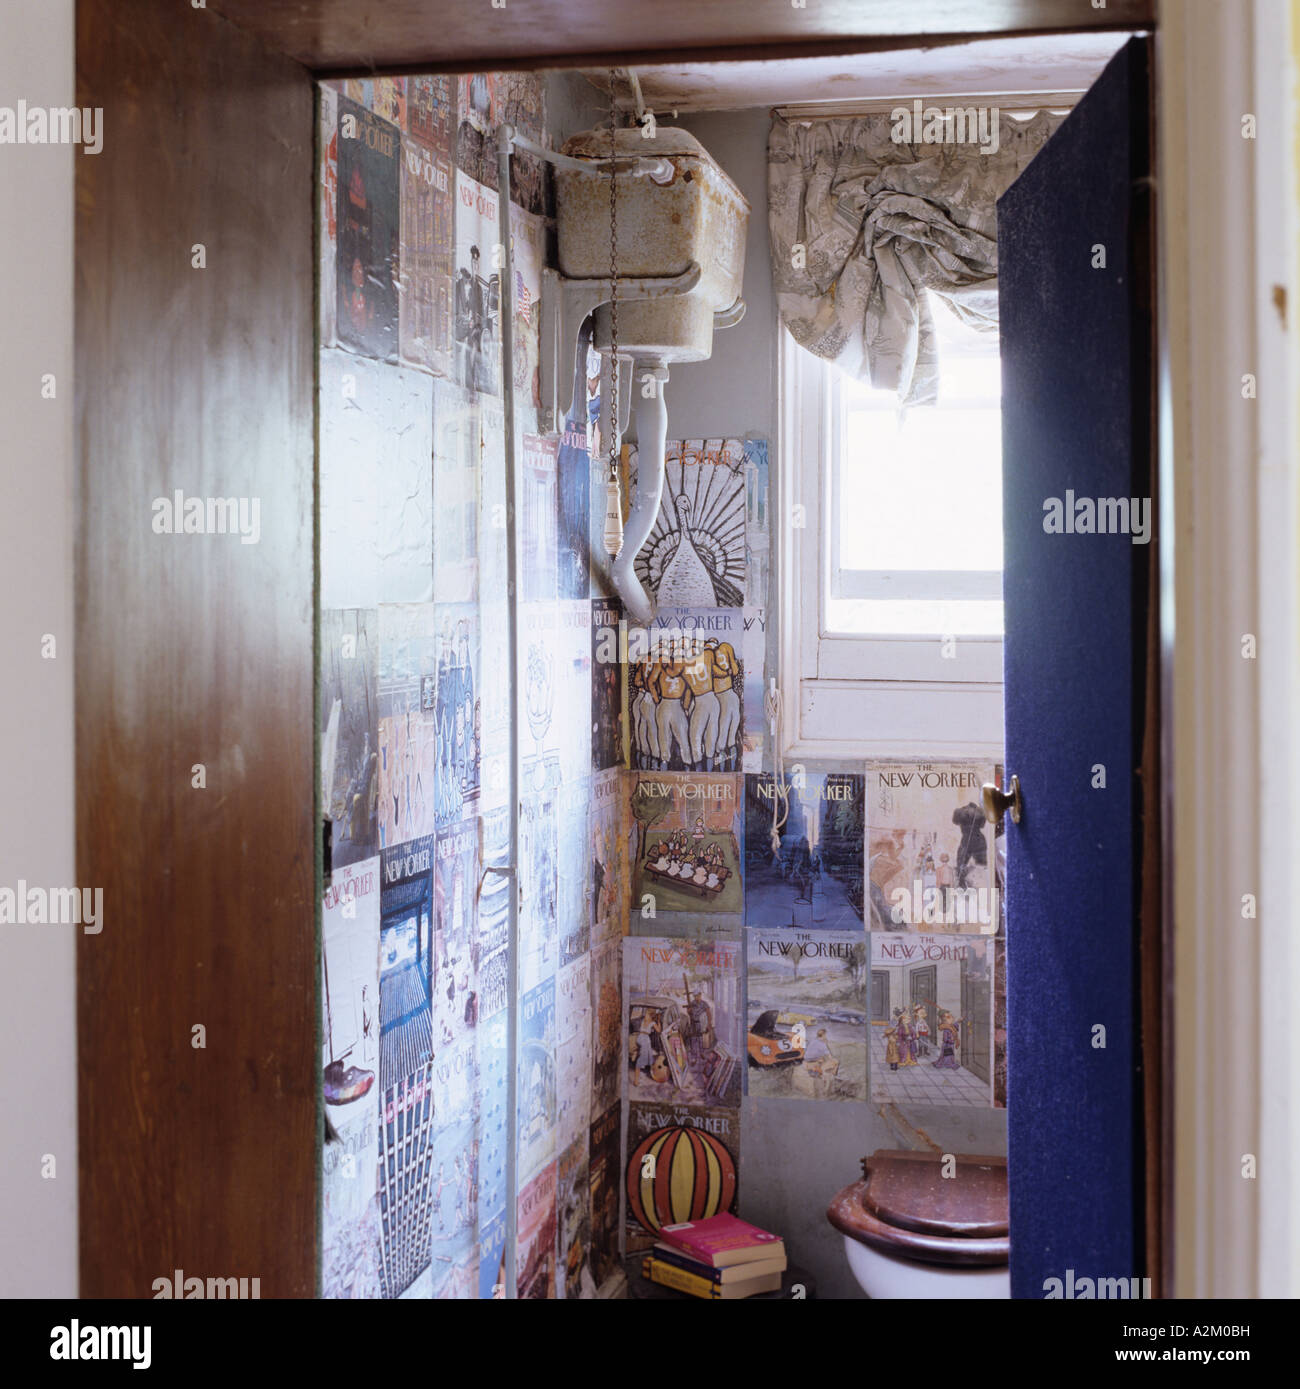 Altmodische WC mit hohen Tank und alte Plakate Stockfoto